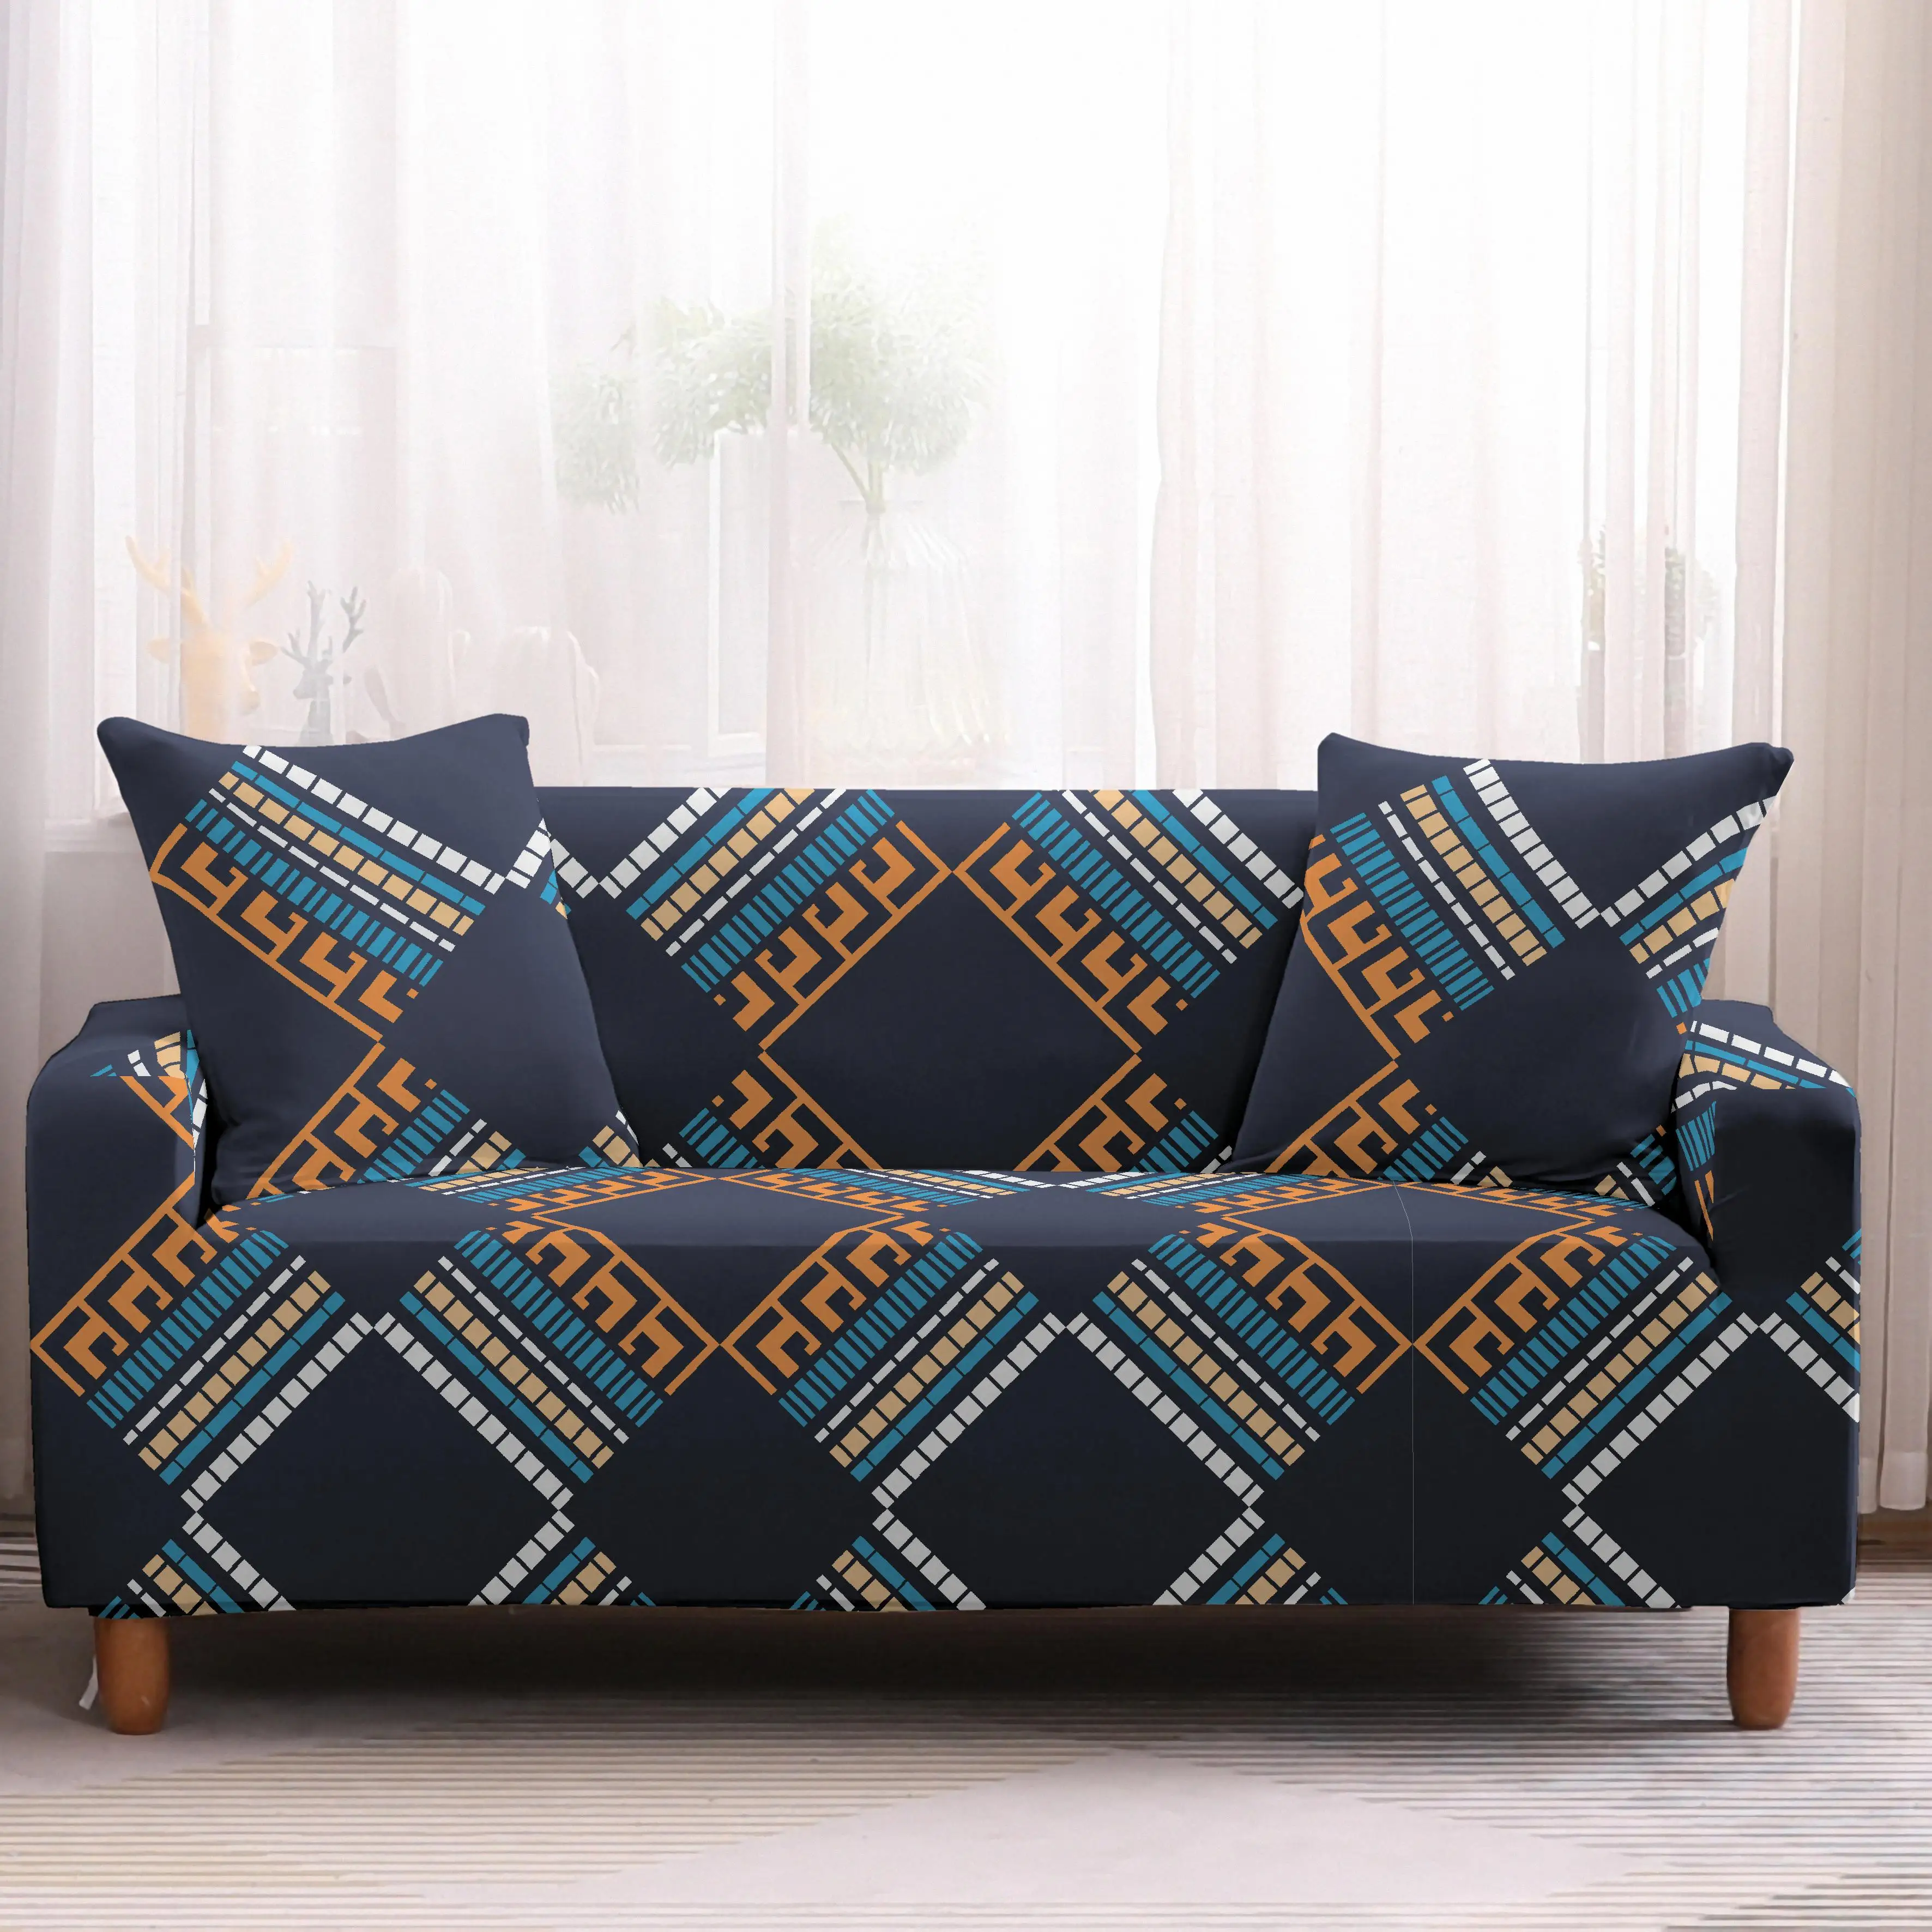 Скандинавские винтажные Чехлы для дивана с геометрическим узором, эластичные Чехлы для дивана, угловые Чехлы для дивана, полотенца, чехлы для дивана, чехлы для гостиной - Цвет: 8